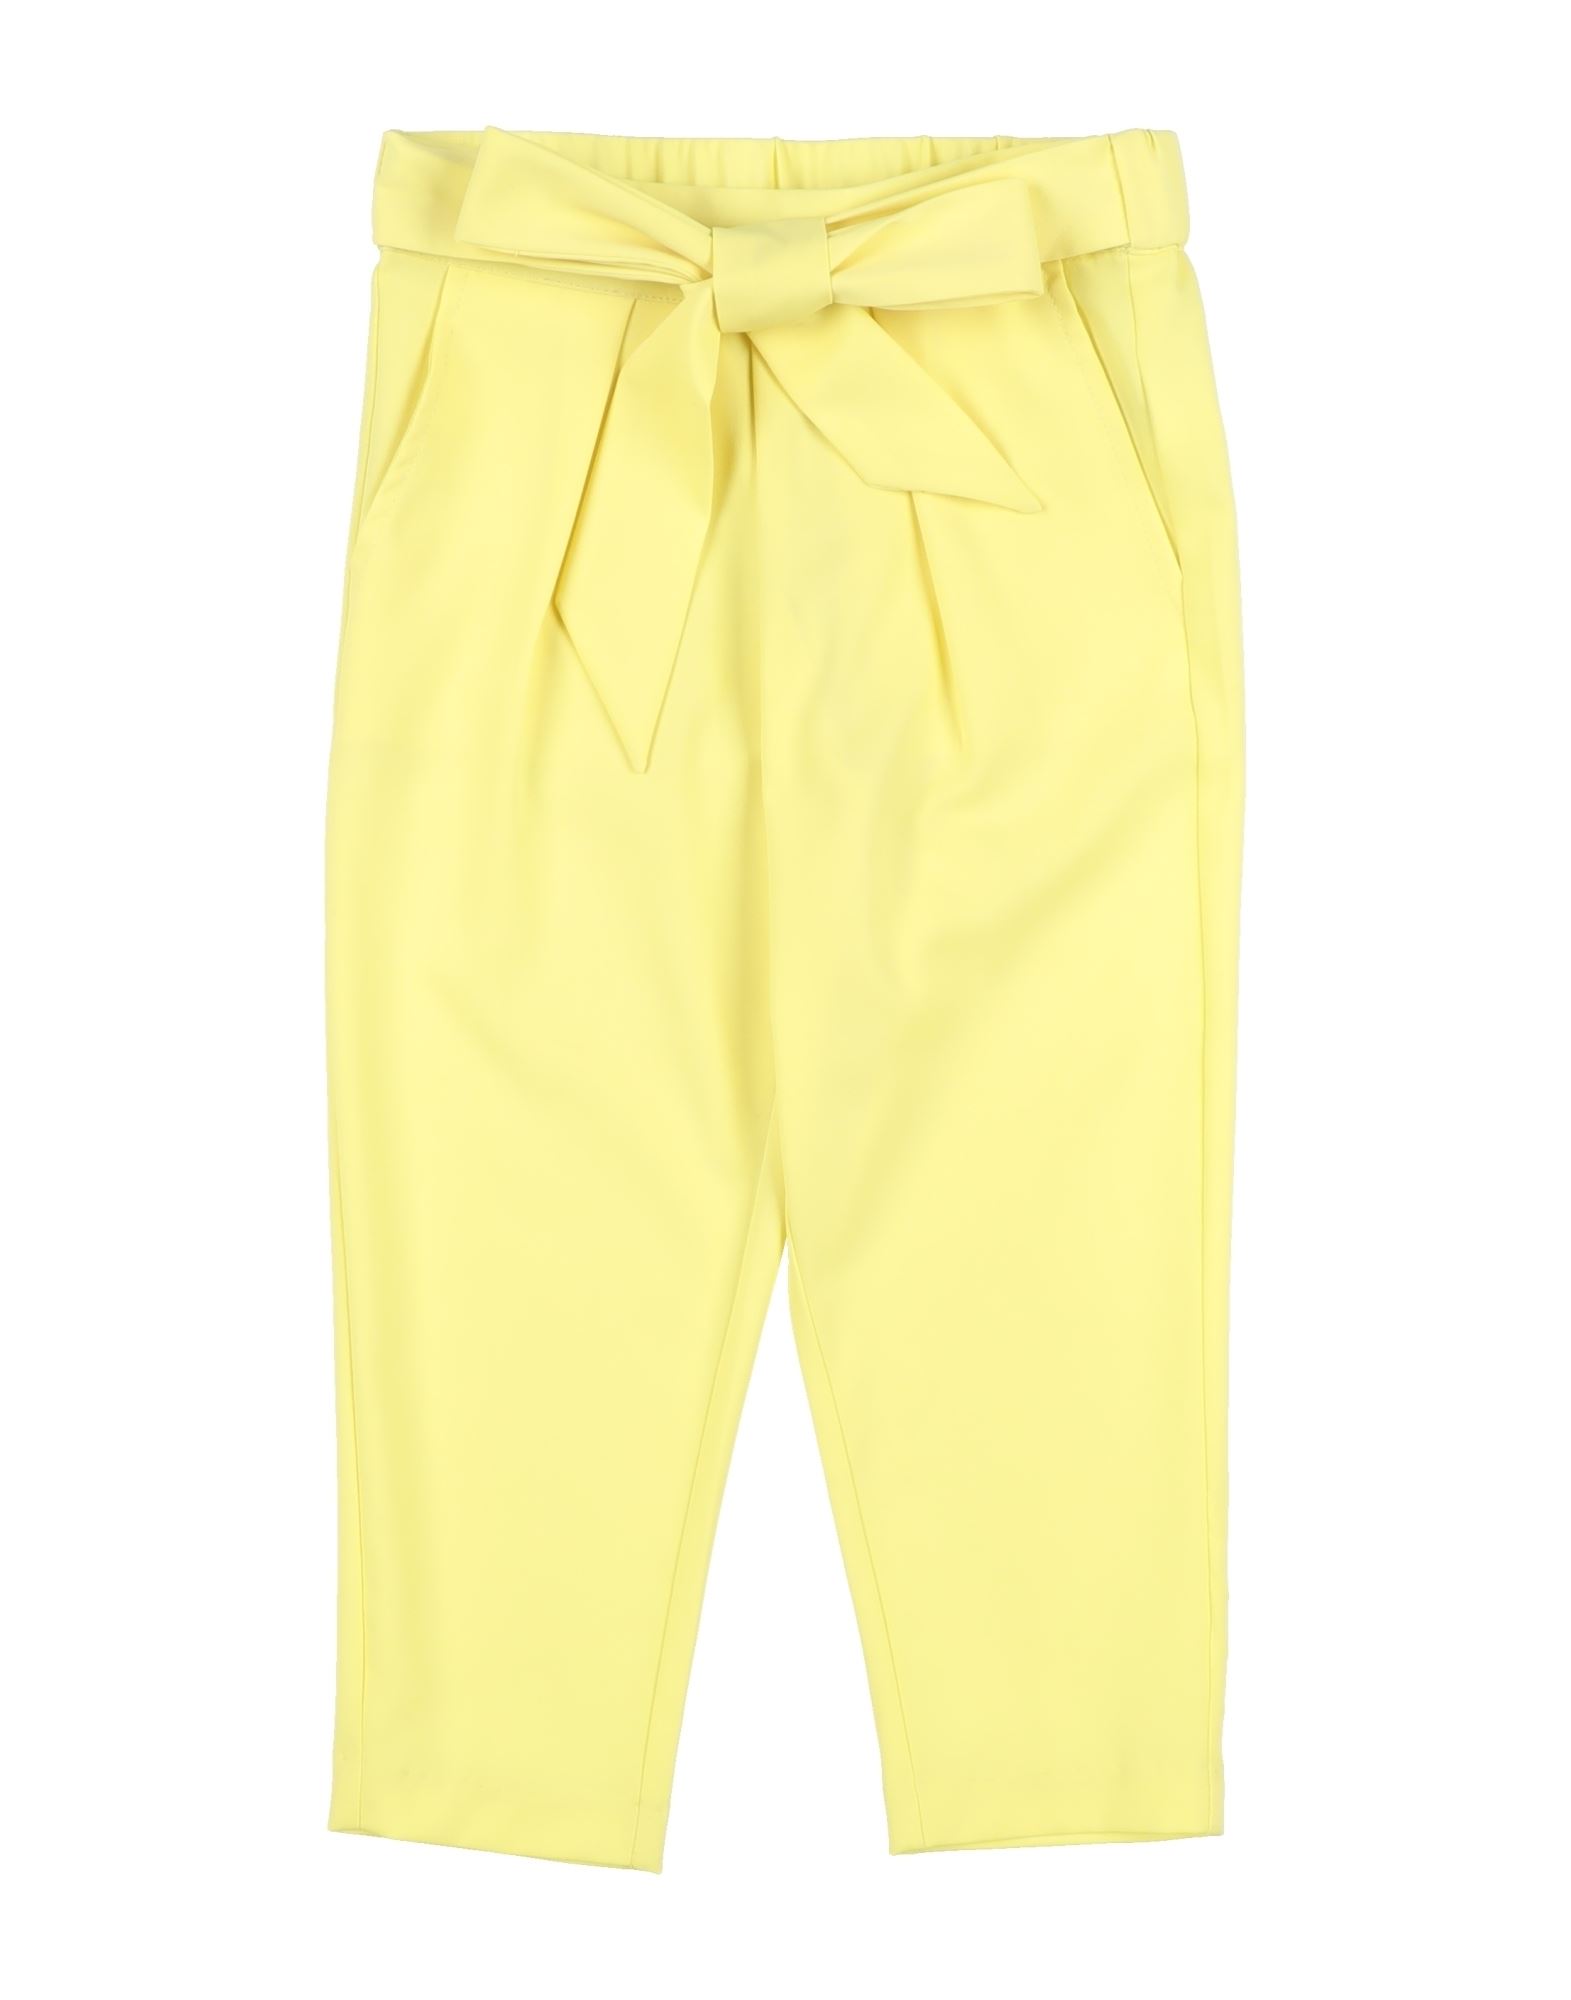 Fun & Fun Kids'  Toddler Girl Pants Yellow Size 5 Polyester, Elastane